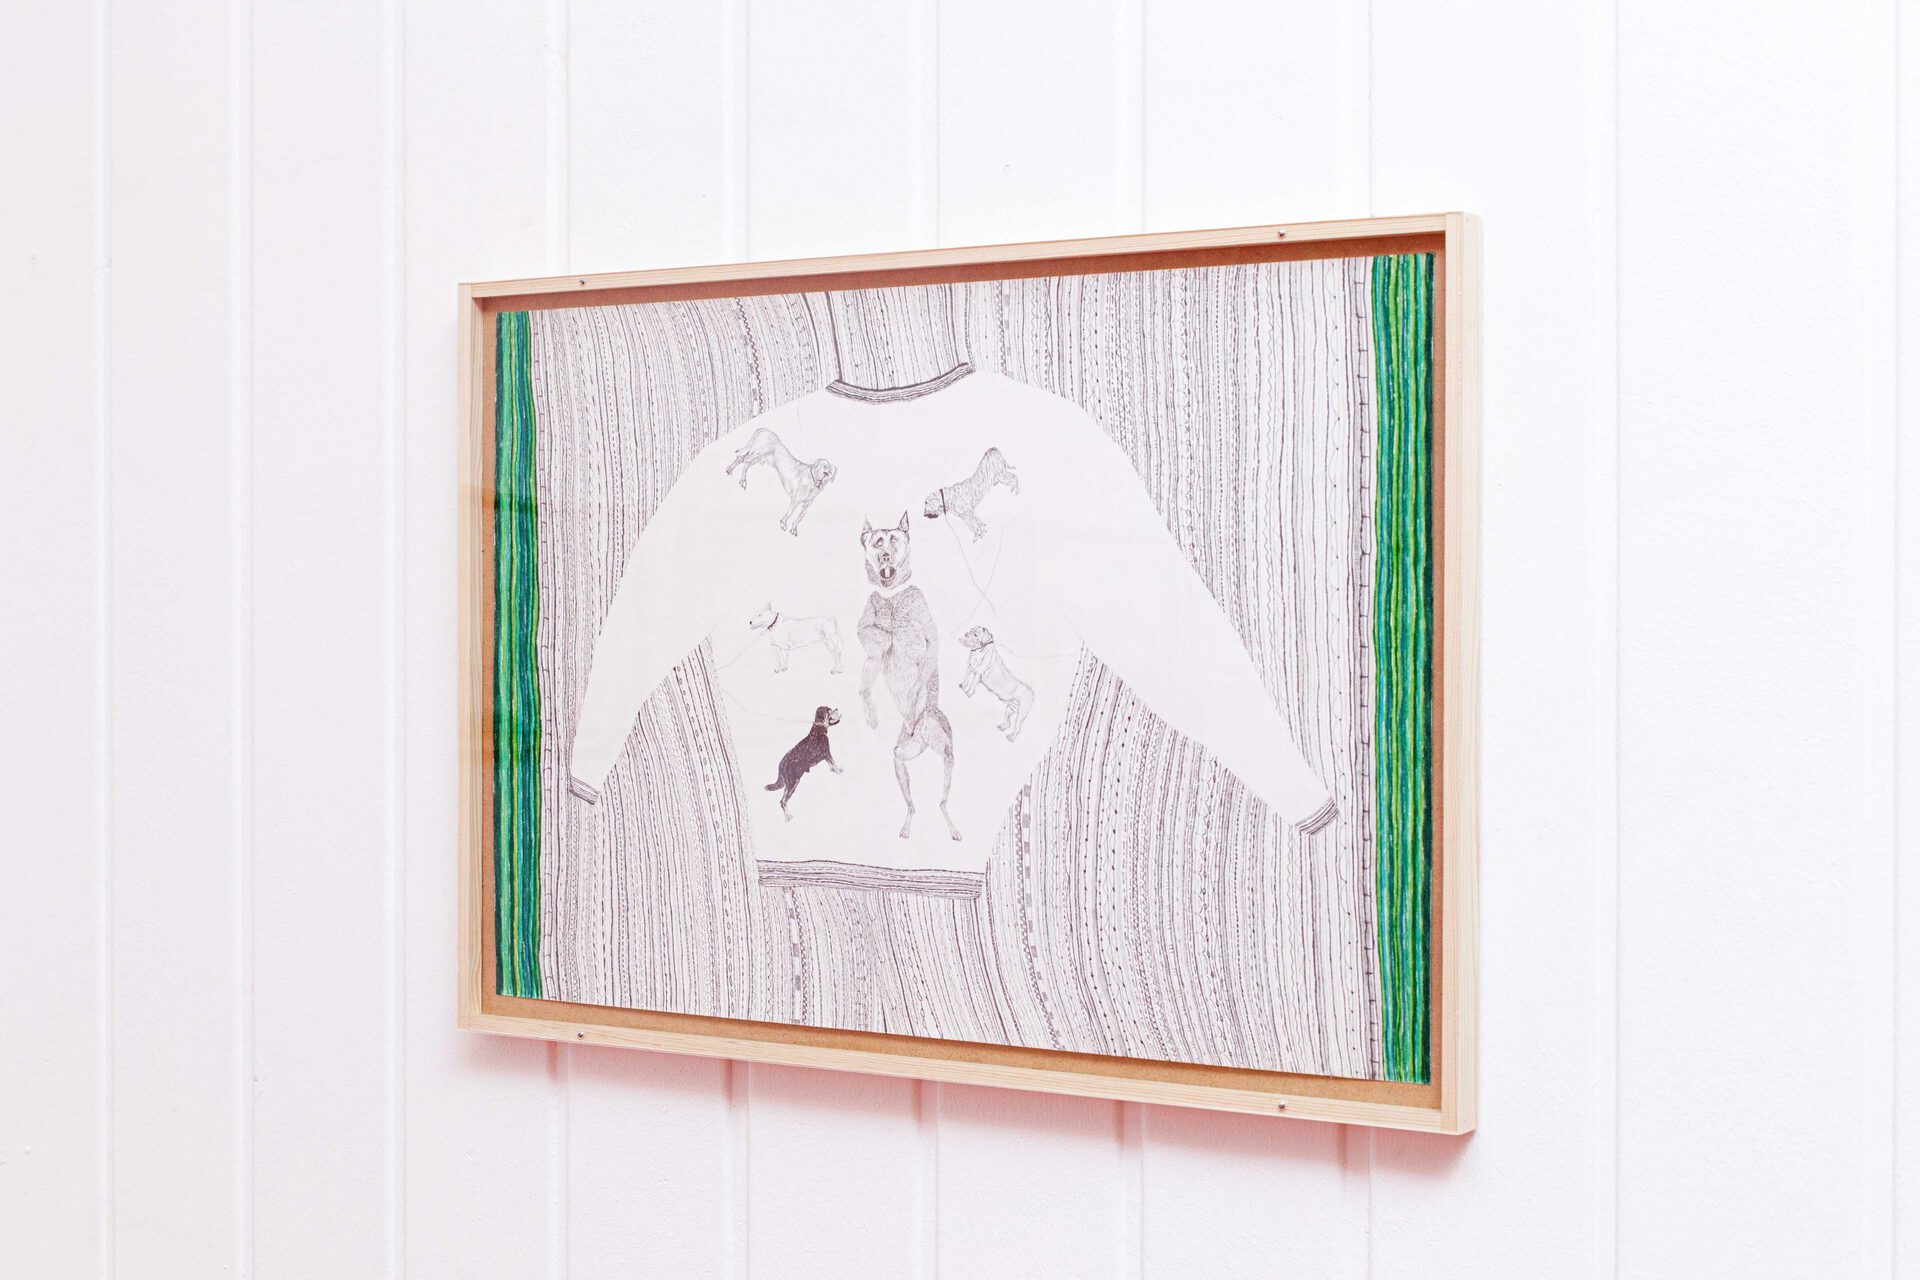 Pullover Kettenhunde (Schäferhund, Bullterrier, Mastiff, Cane Corso,Rottweiler,..) 2021, Color pencil and graphite on paper, wooden frame, plexiglas 68 x 48 cm